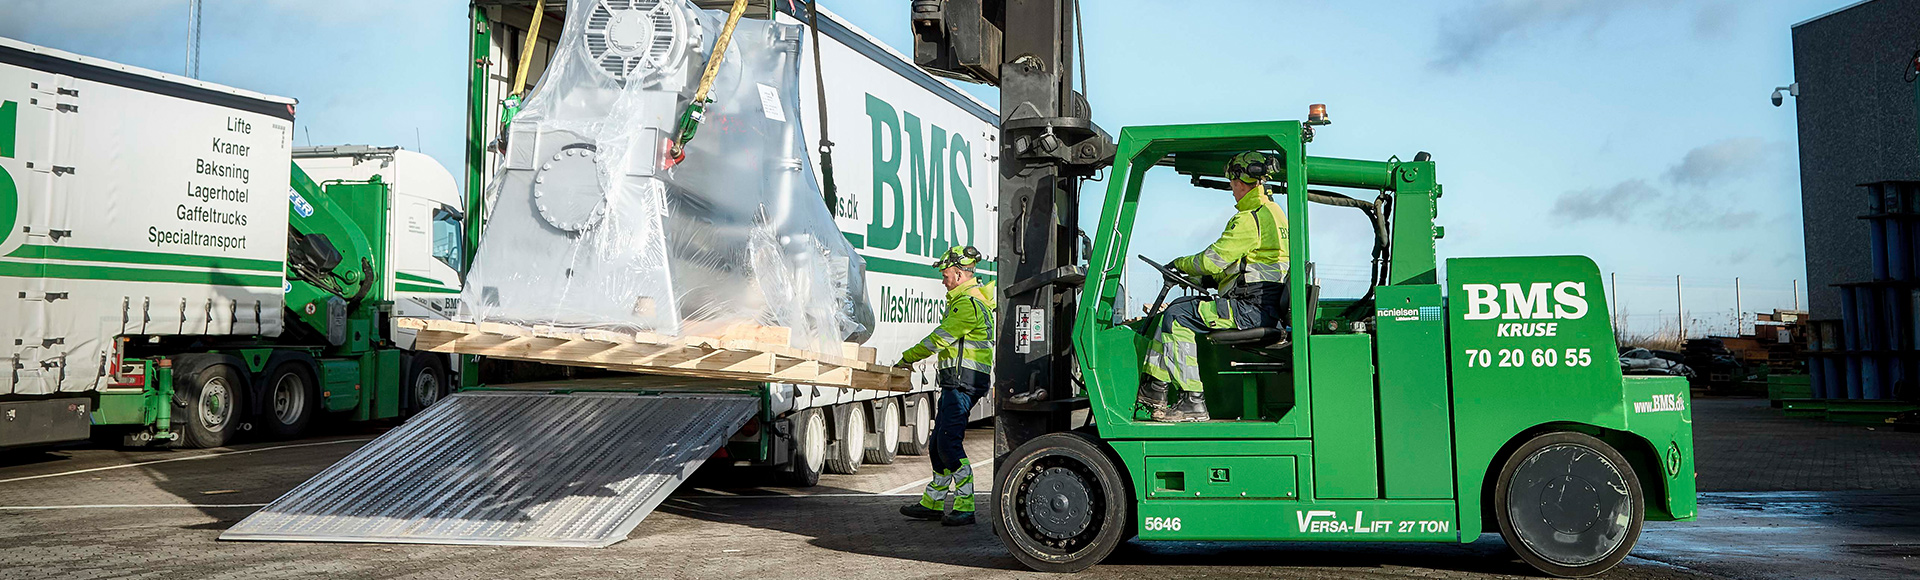 Renoveret BMS-truck med grøn energiløsning